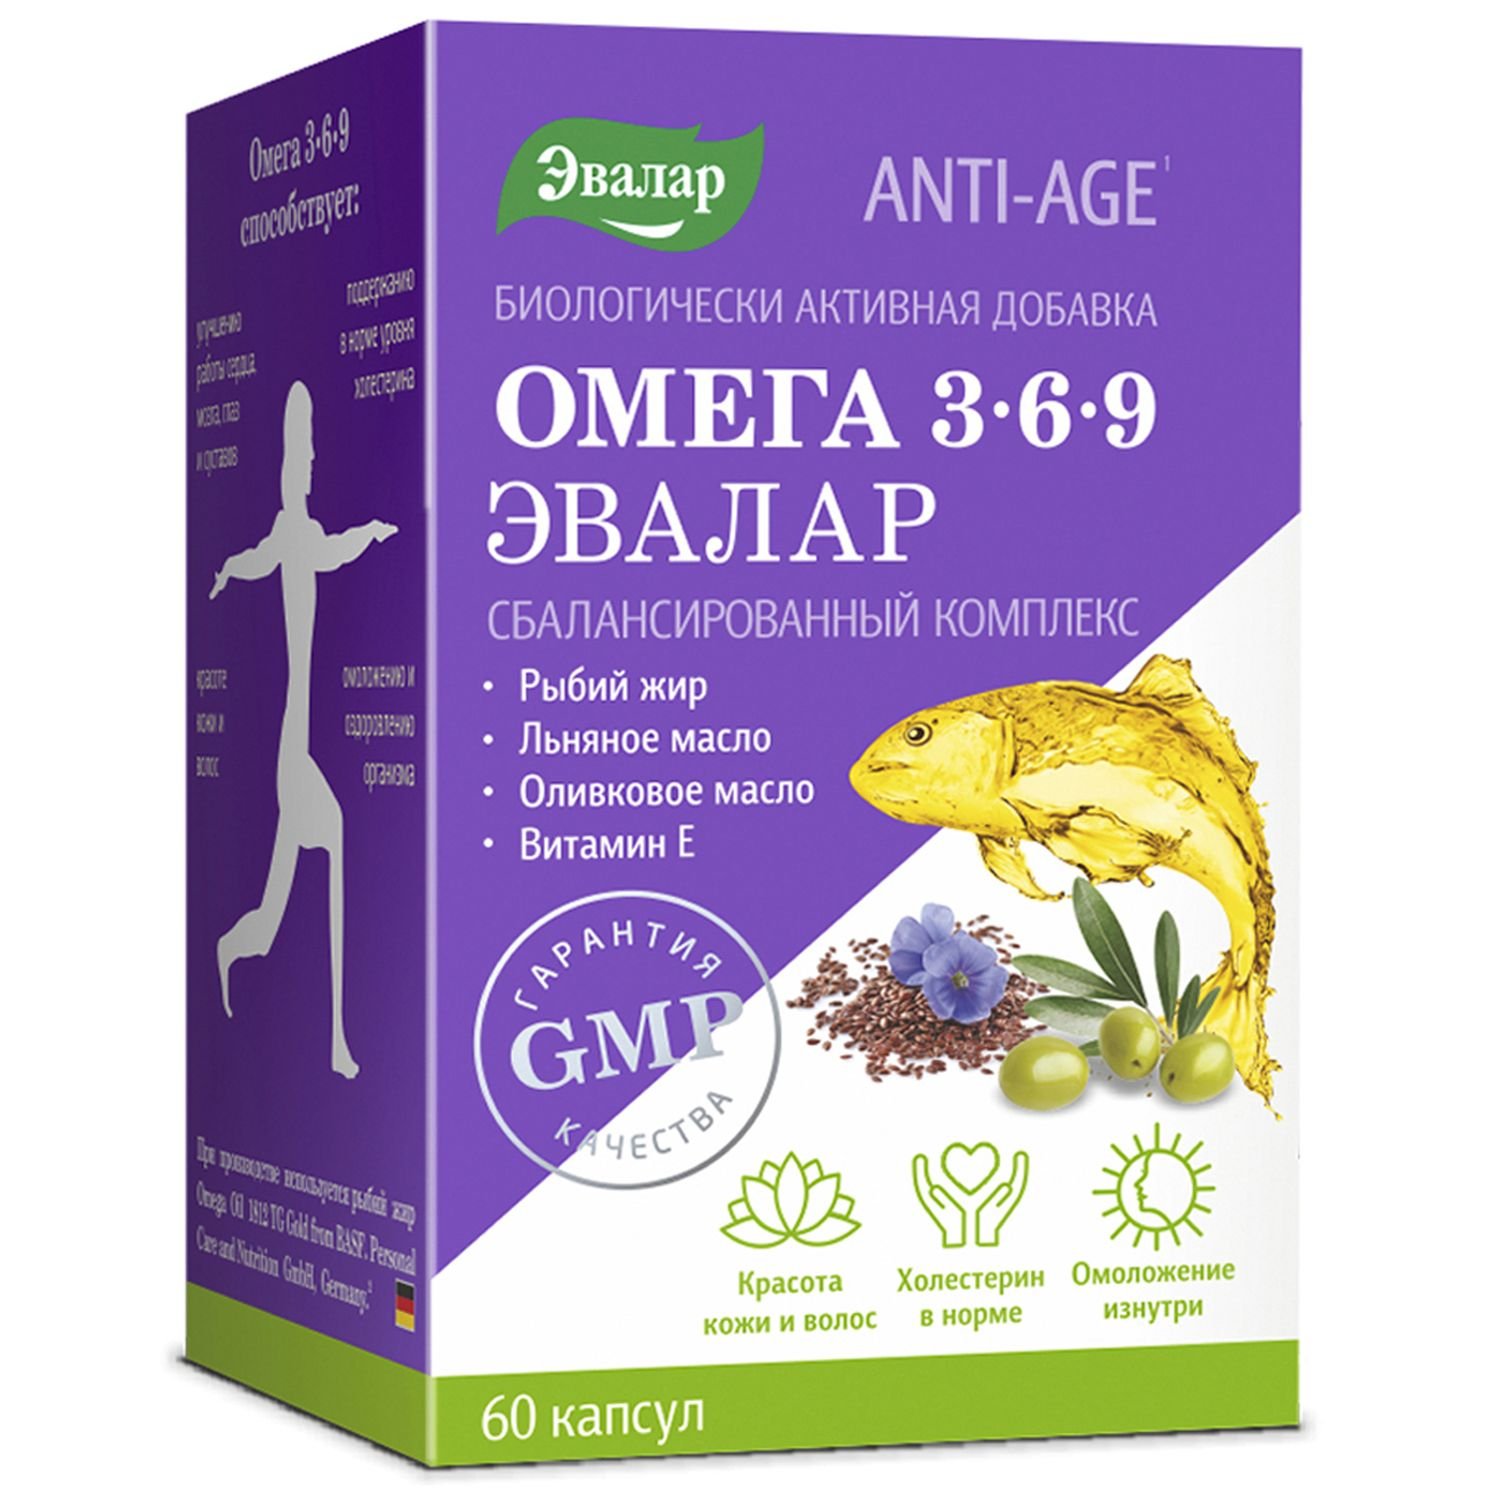 Биологически активная добавка Эвалар Омега 3 6 9 Anti-Age 60капсул - фото 1